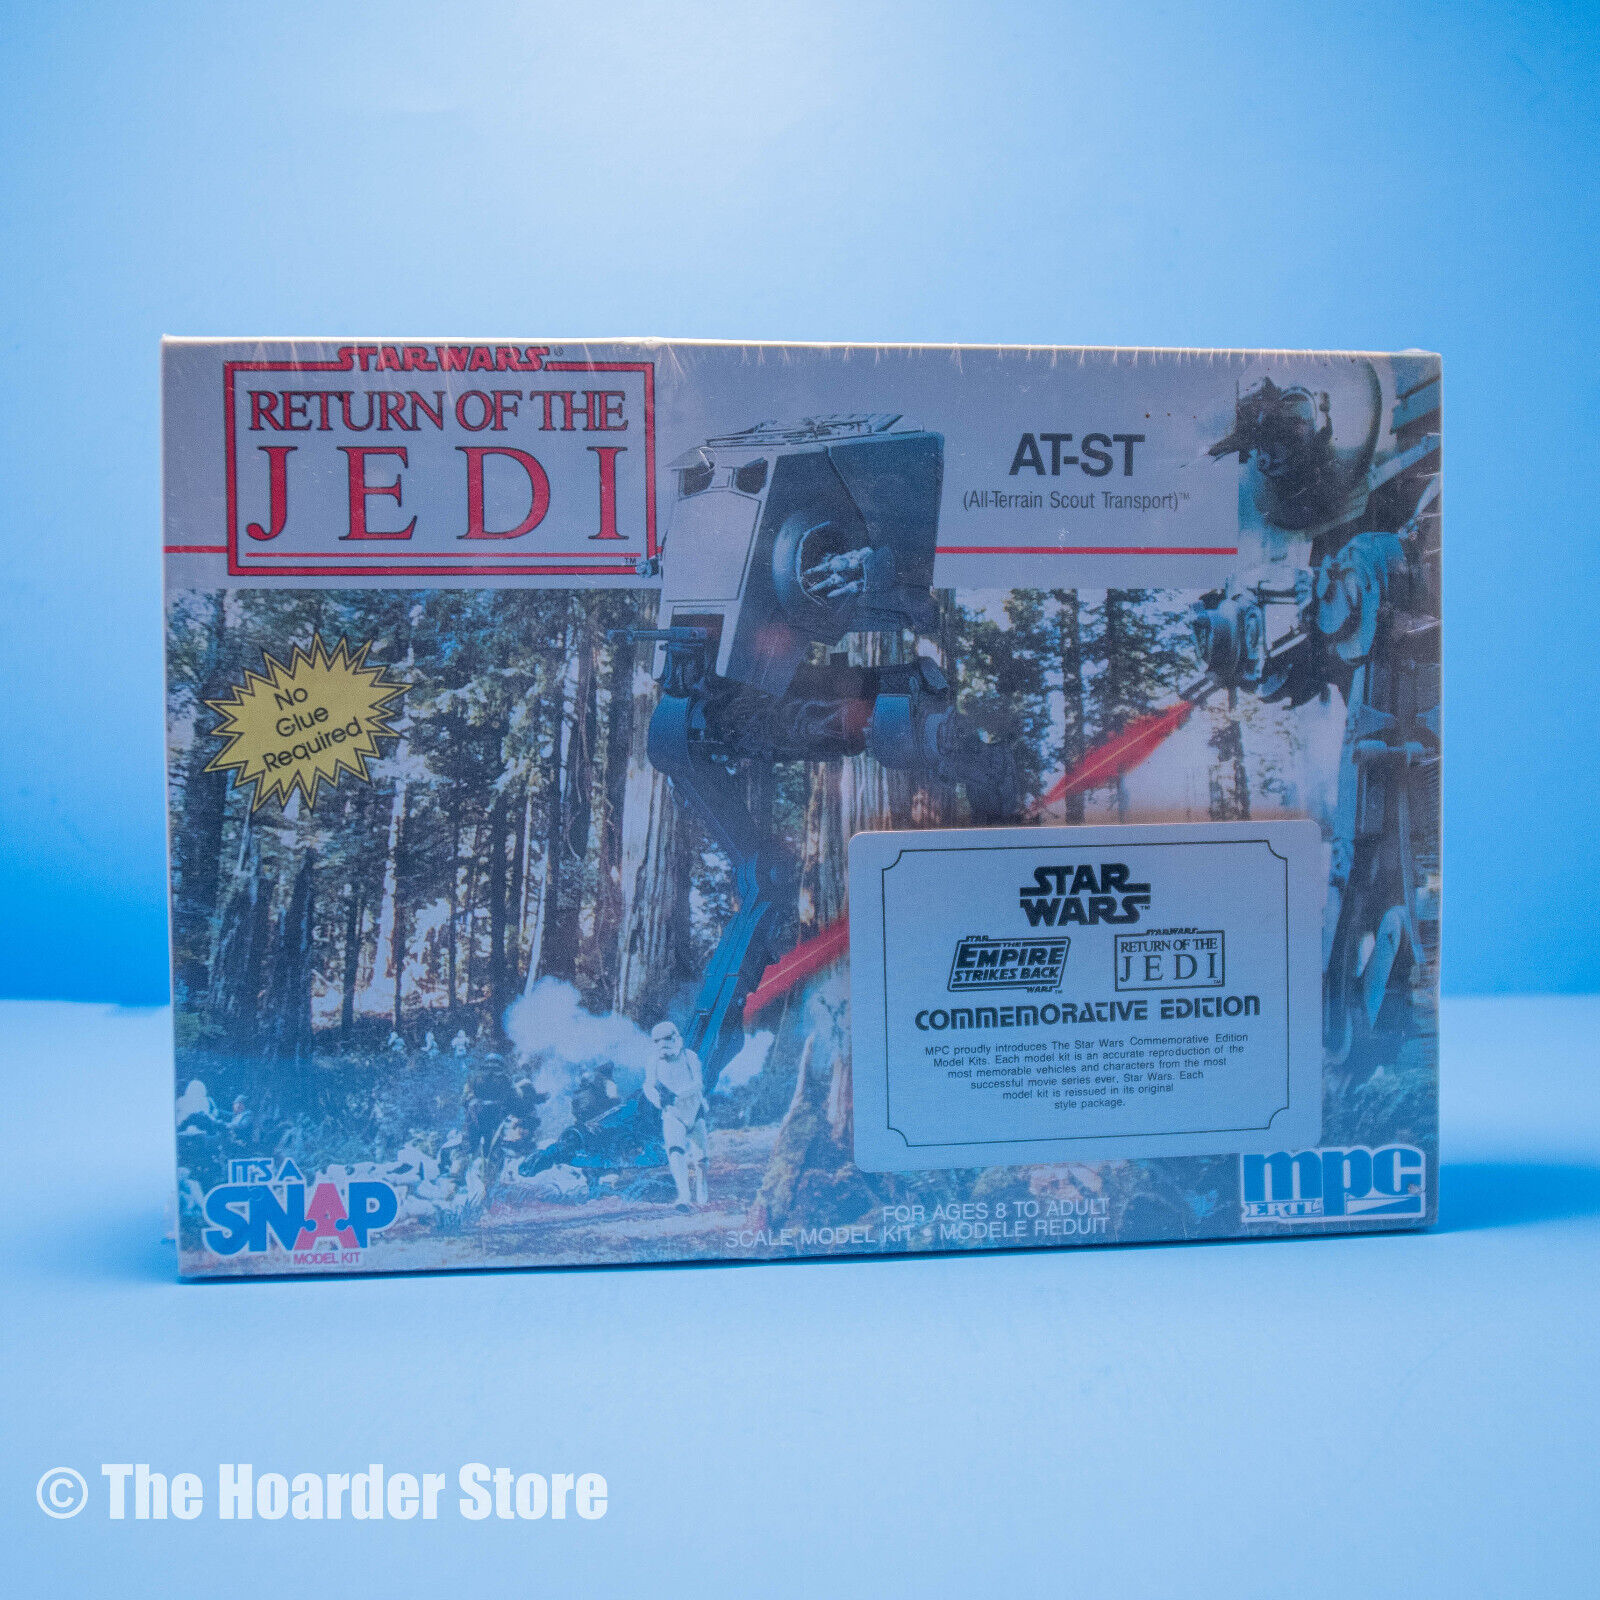 MPC Ertl Star Wars Return of the Jedi AT-ST Snap Model Kit 8734 (1992)